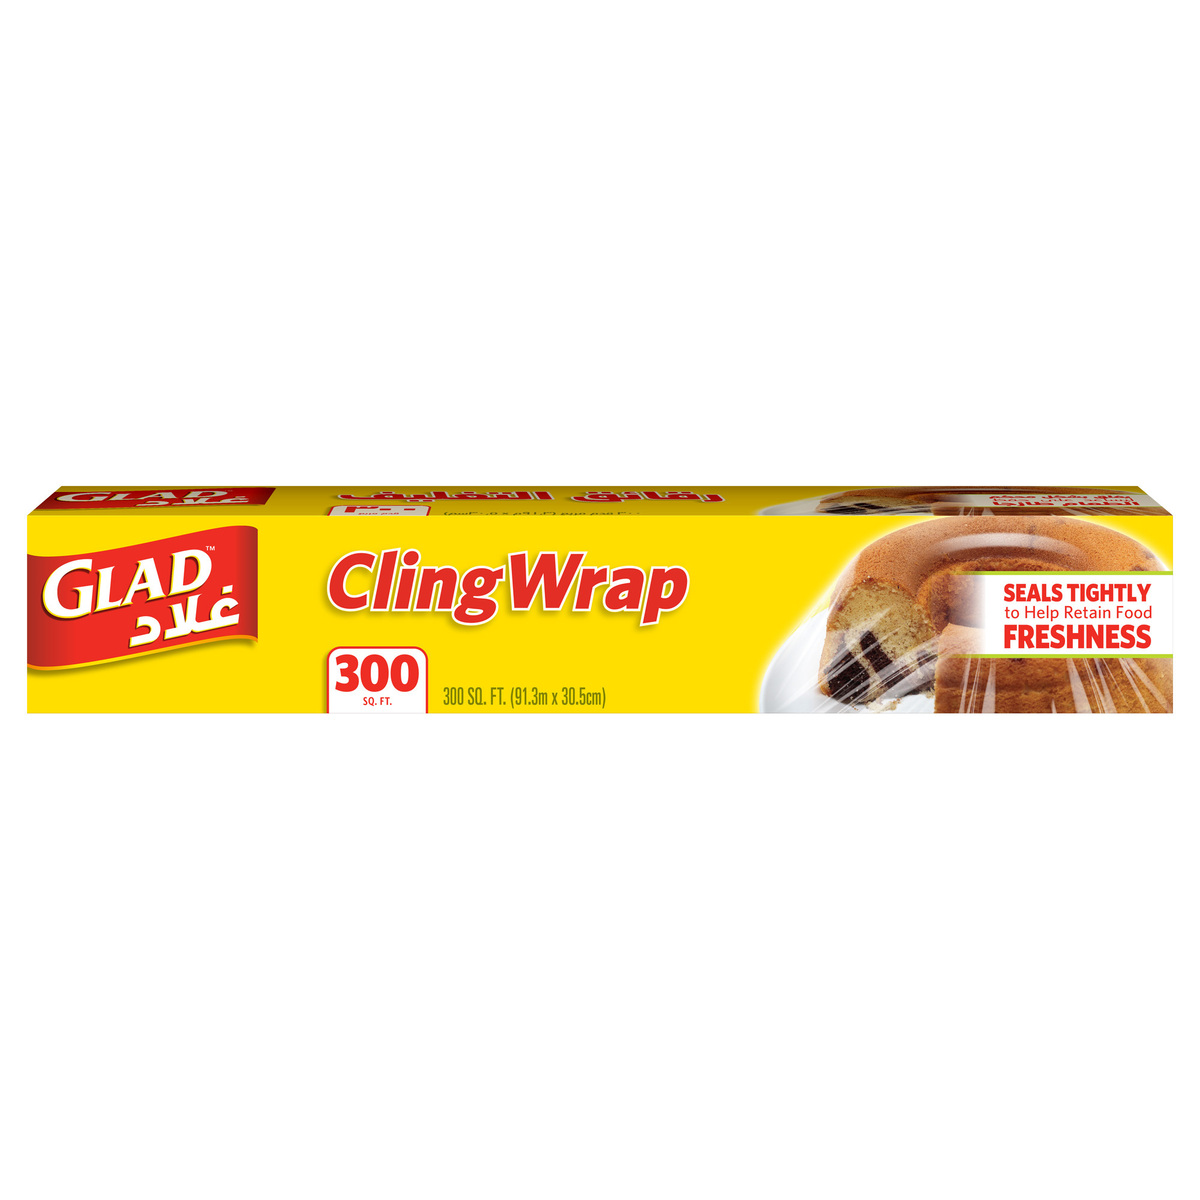 Glad Cling Wrap Plastic Wrap 300 sq. ft. Size 91.3m x 30.5cm 1 pc